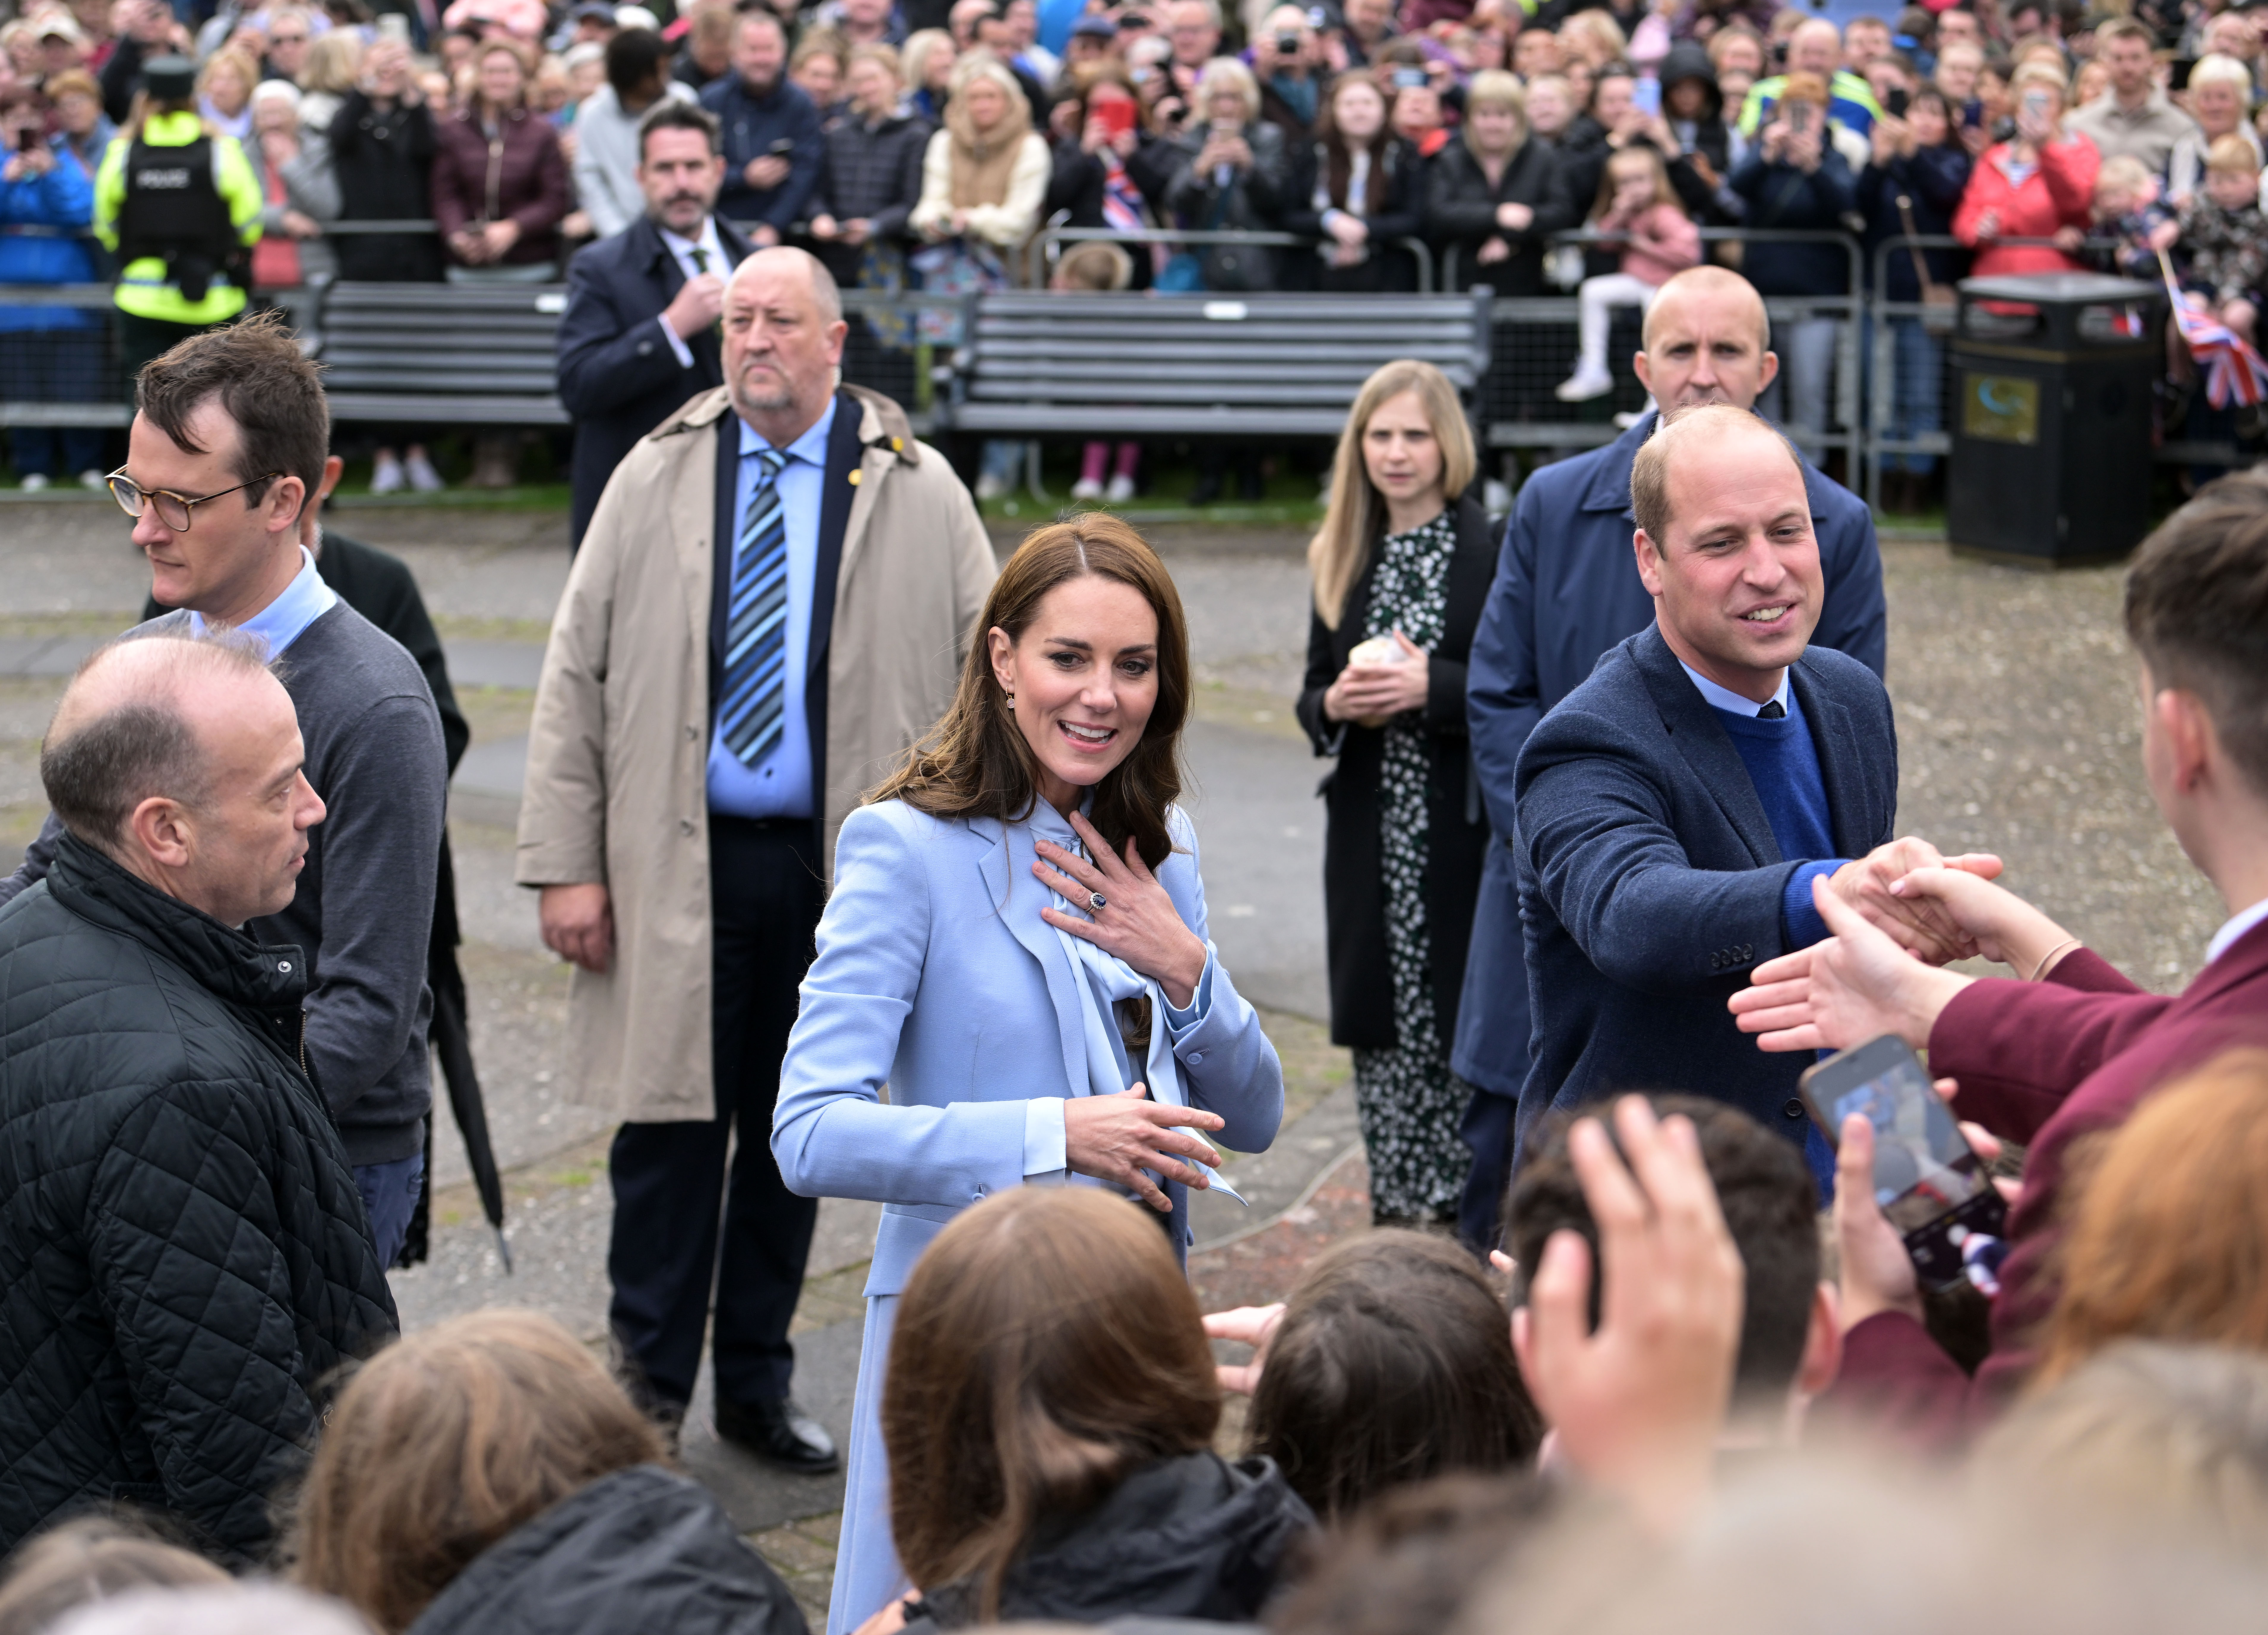 Catherine, princesa de Gales y el príncipe William, príncipe de Gales saludan al público durante su visita al Castillo de Carrickfergus en Belfast, Irlanda del Norte, el 6 de octubre de 2022. | Fuente: Getty Images